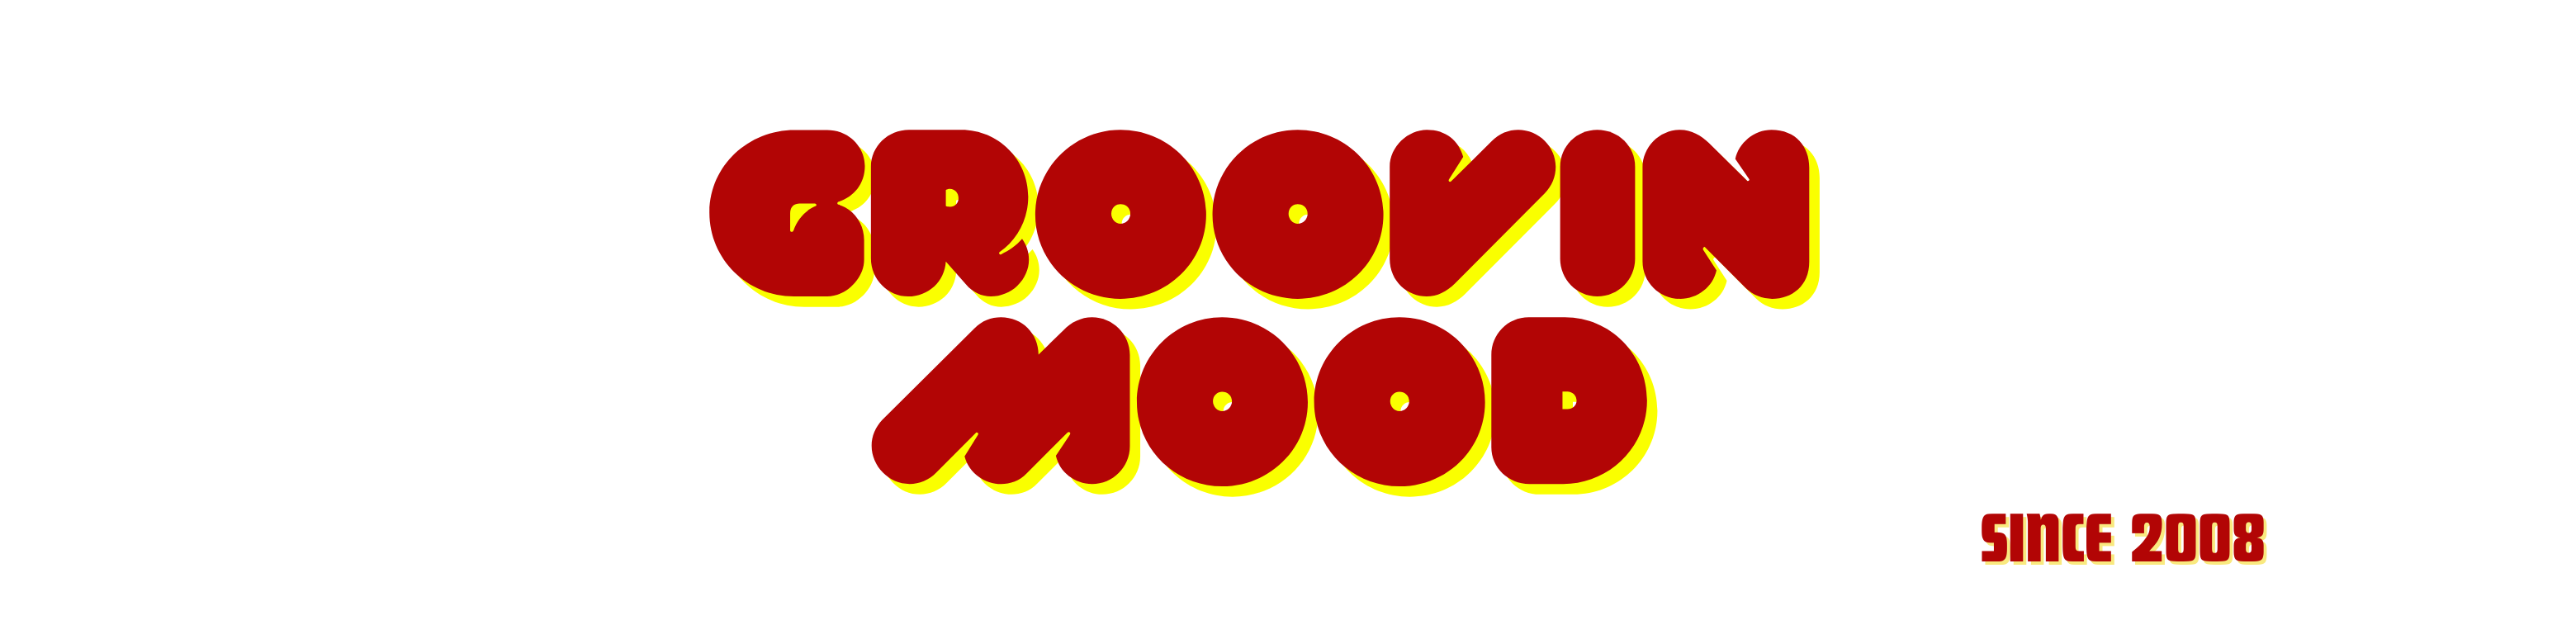 GROOVIN MOOD